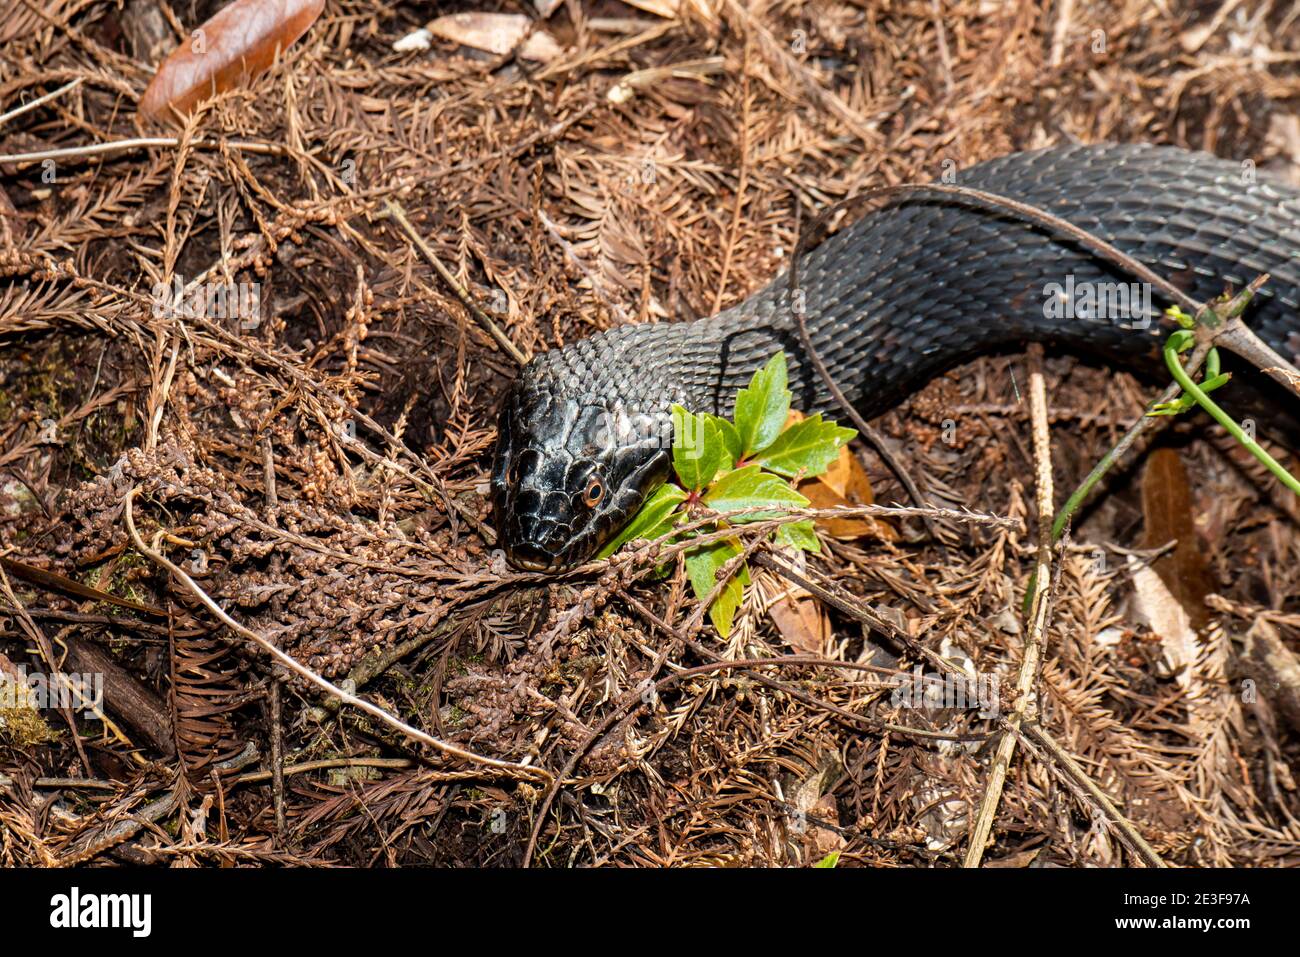 Copeland, Floride. Parc national de la réserve de Fakahatchee Strand. Serpent d'eau à bandes 'Nerodia fasciata' dans les Everglades. Banque D'Images